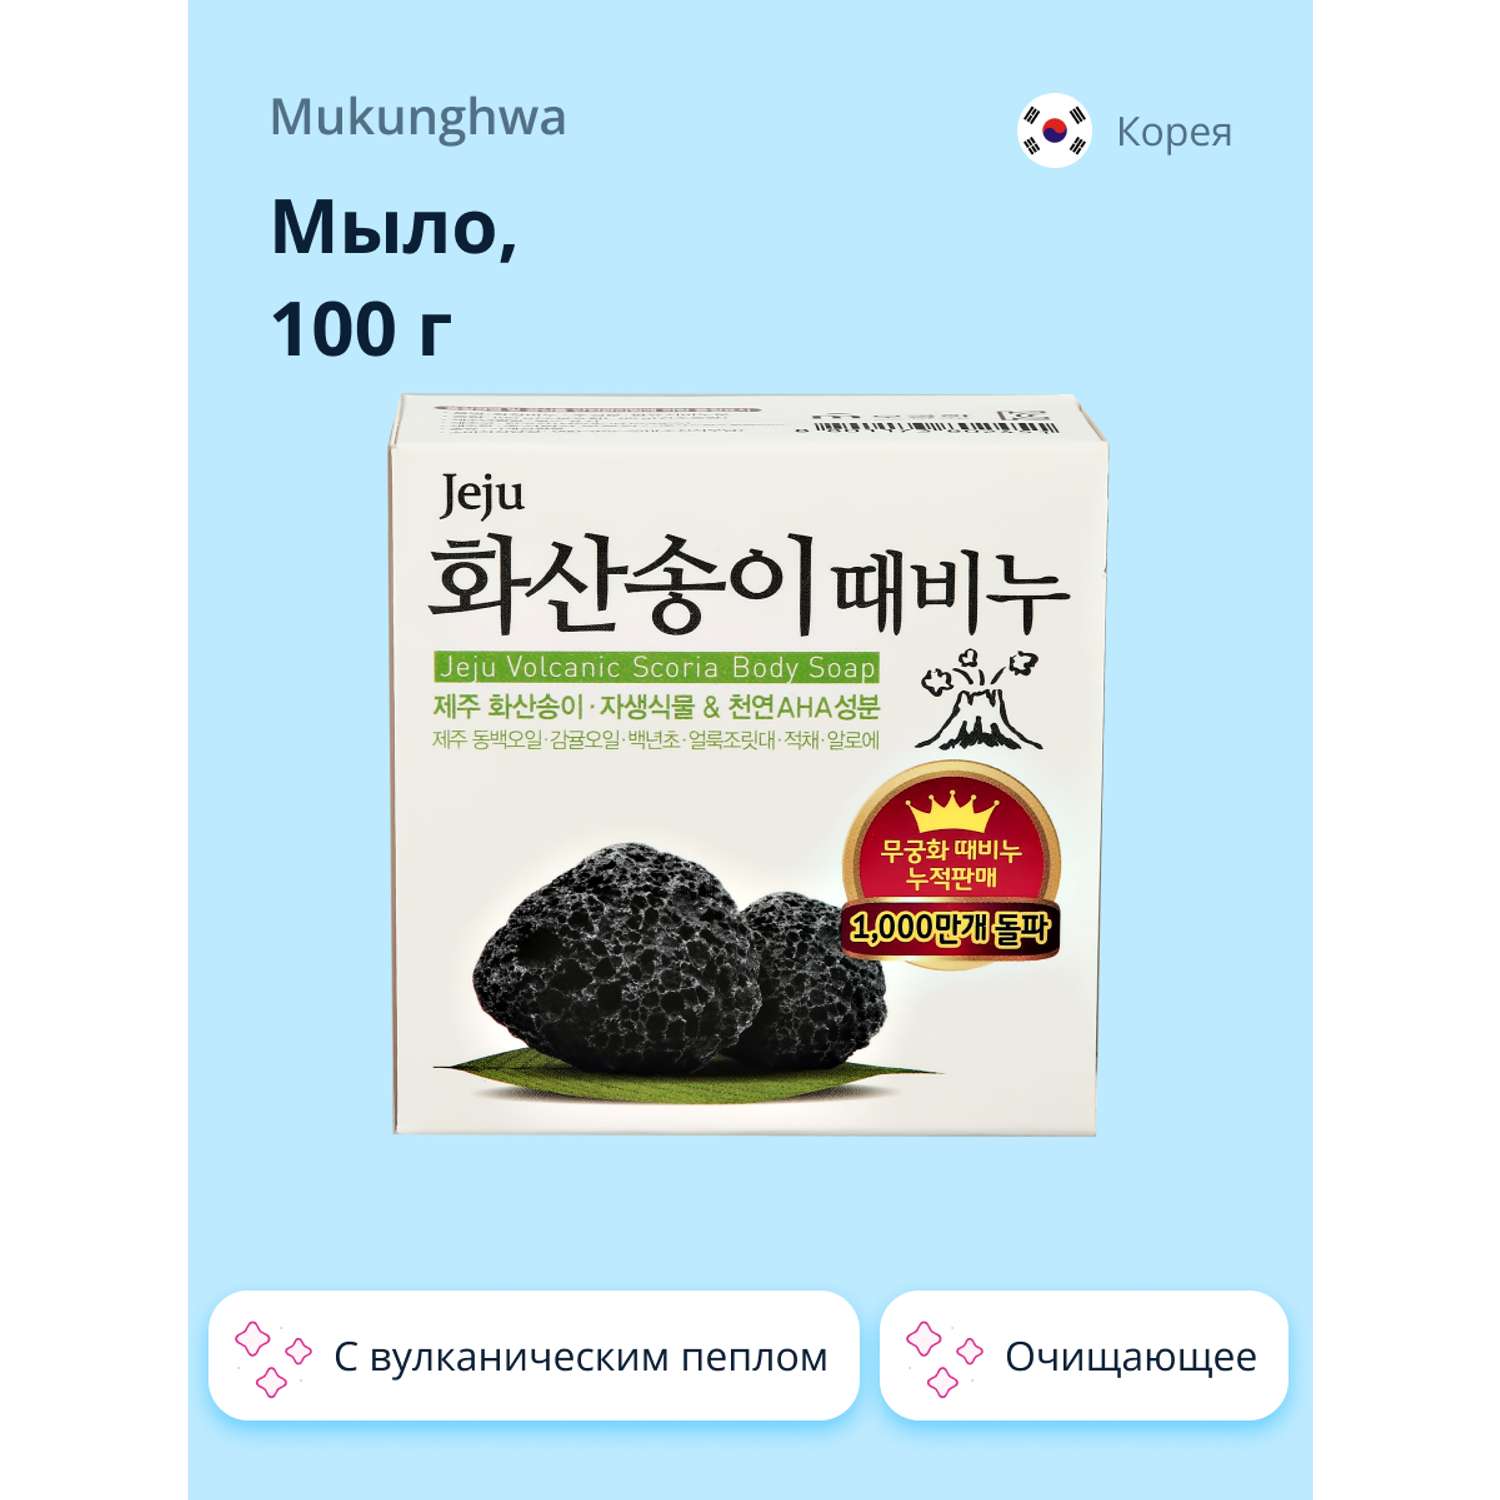 Мыло твердое Mukunghwa с вулканическим пеплом 100 г - фото 1